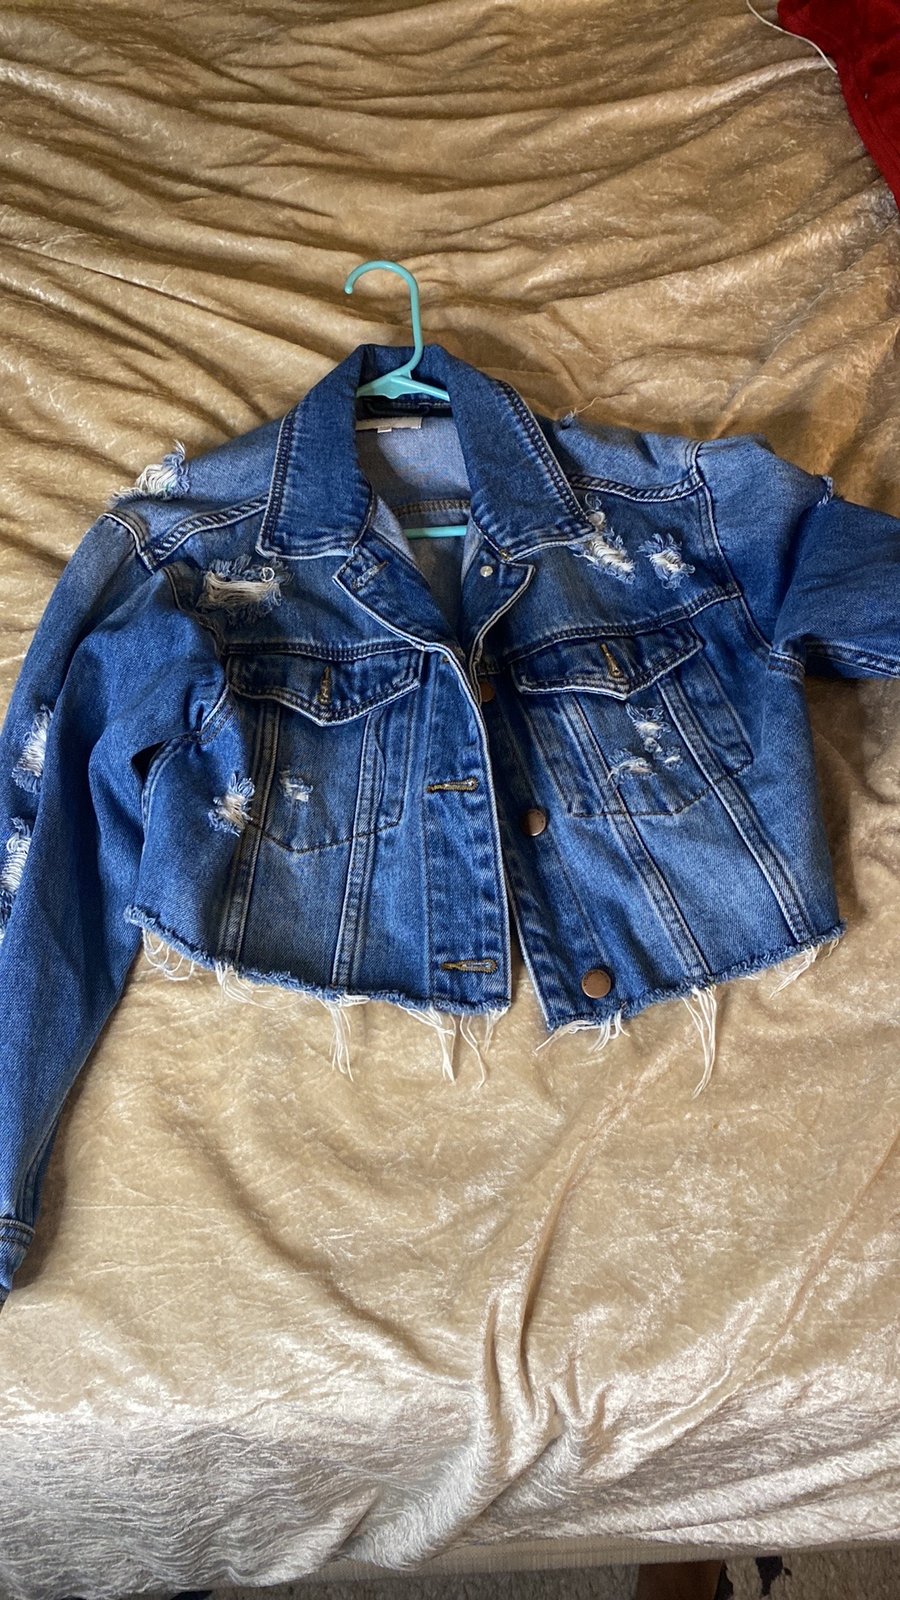 Zara sz S distressed oversized jean jacket